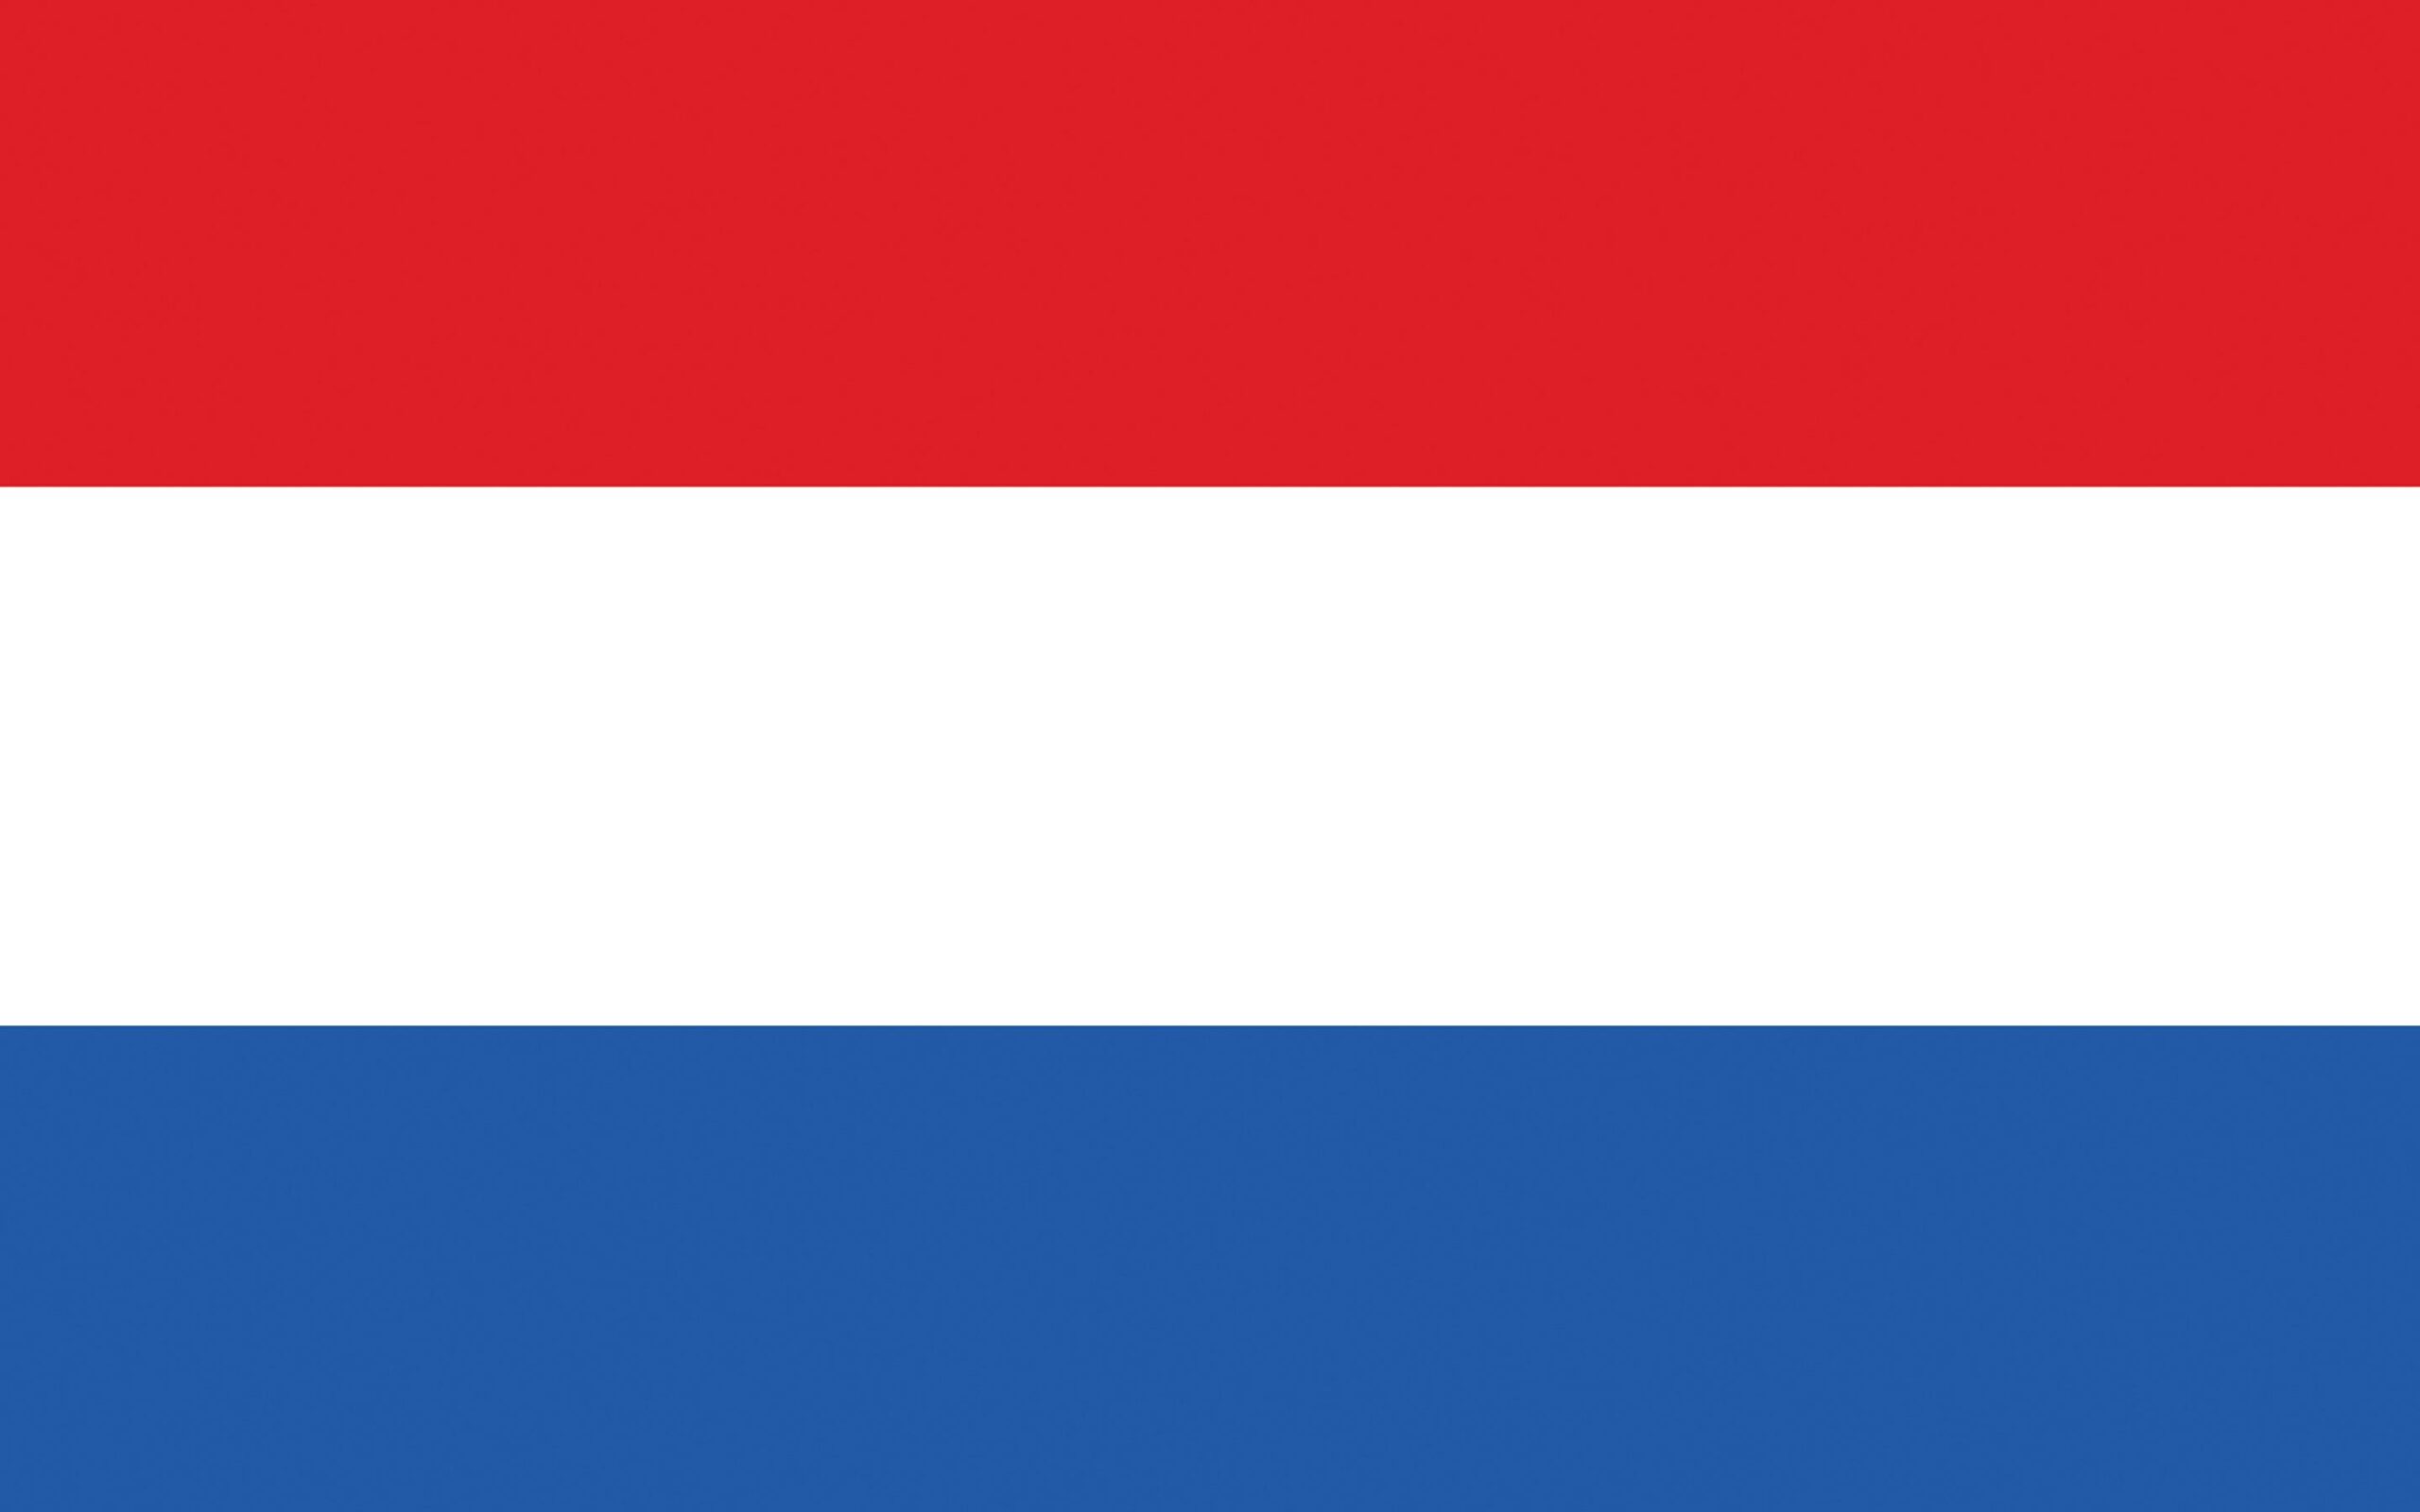 Image Netherlands Flag Stripes